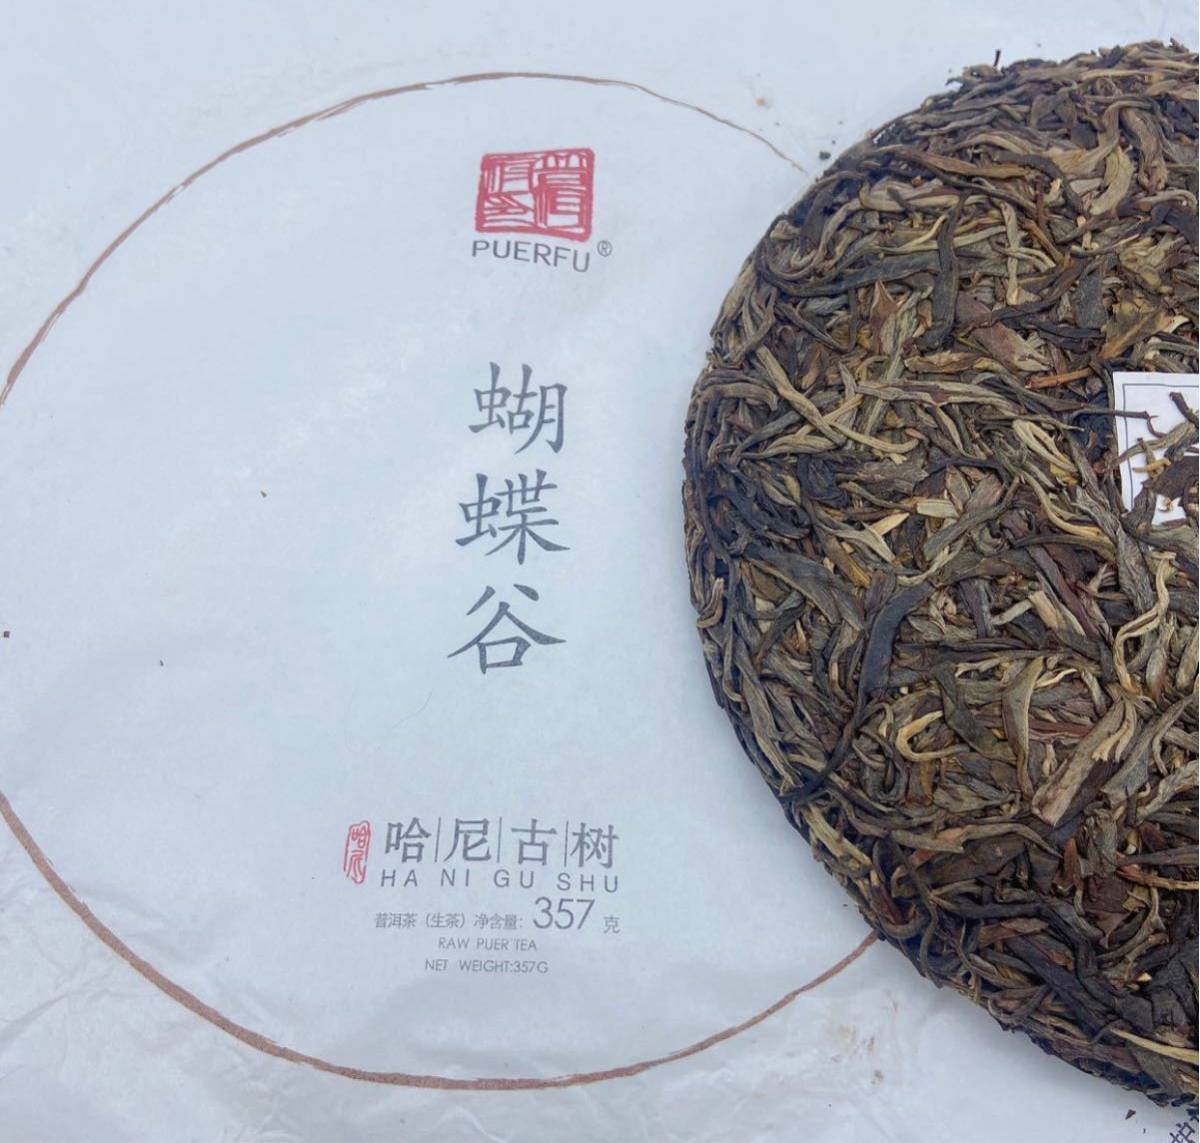 哈尼古茶 雲南省 プーアル茶「蝴蝶谷」生茶 古樹茶